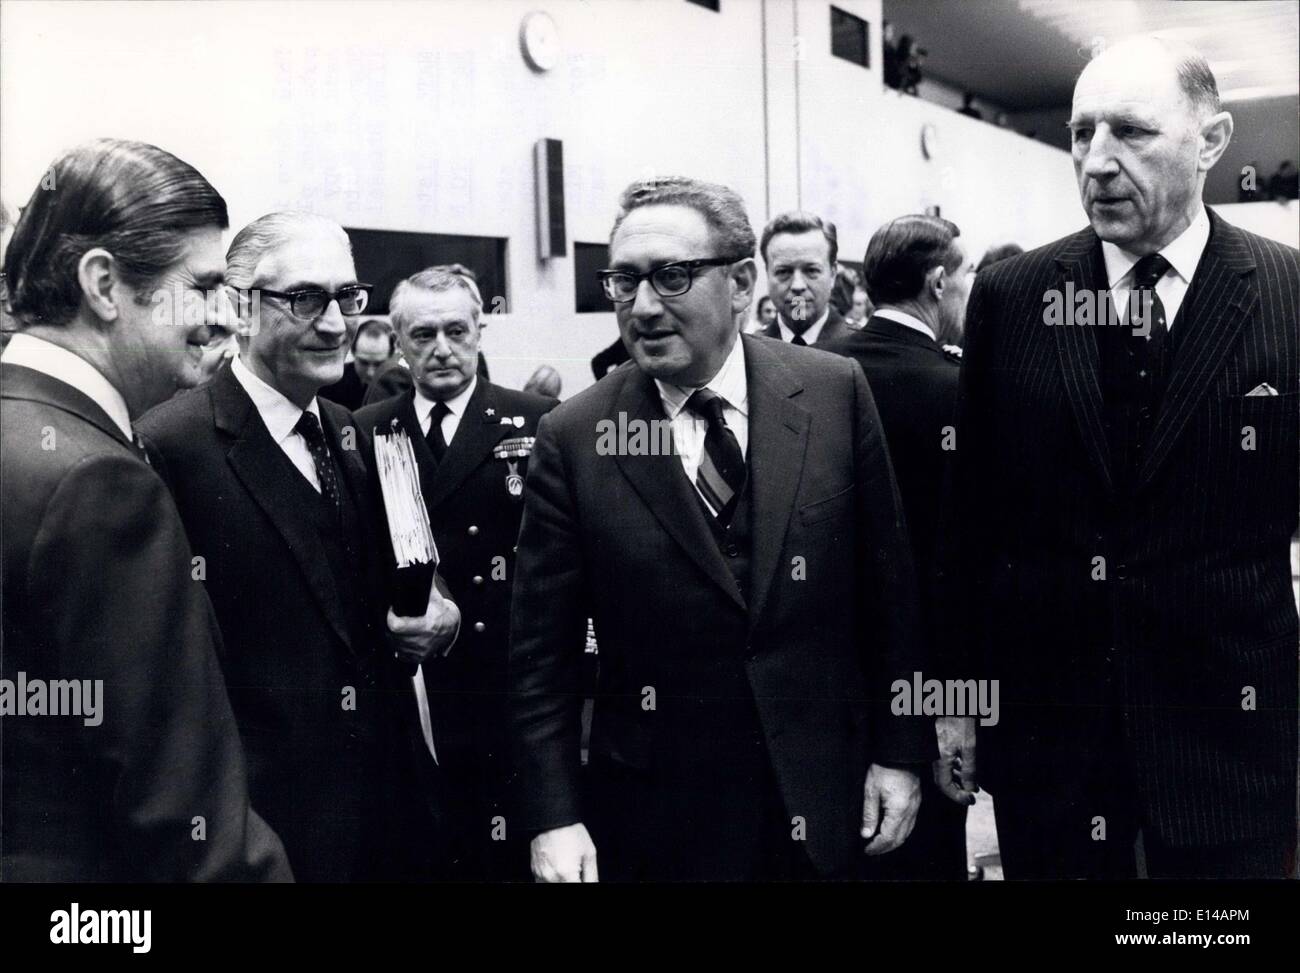 17. April 2012 - der Ministersitzung des NATO-Rates begann heute (12. Dezember) im NATO-Hauptquartier. Hier gezeigt ist (von links nach rechts) der griechische Außenminister, Herr D.S. Bitsios (Präsident d' Honneur); der stellvertretende Generalsekretär des Staates der NATO, Herr P. Pansa Cedronio; die US-Außenministerin, Herr H. Kissinger und der Generalsekretär der NATO, Mr J.M.A.H. Luns. Stockfoto